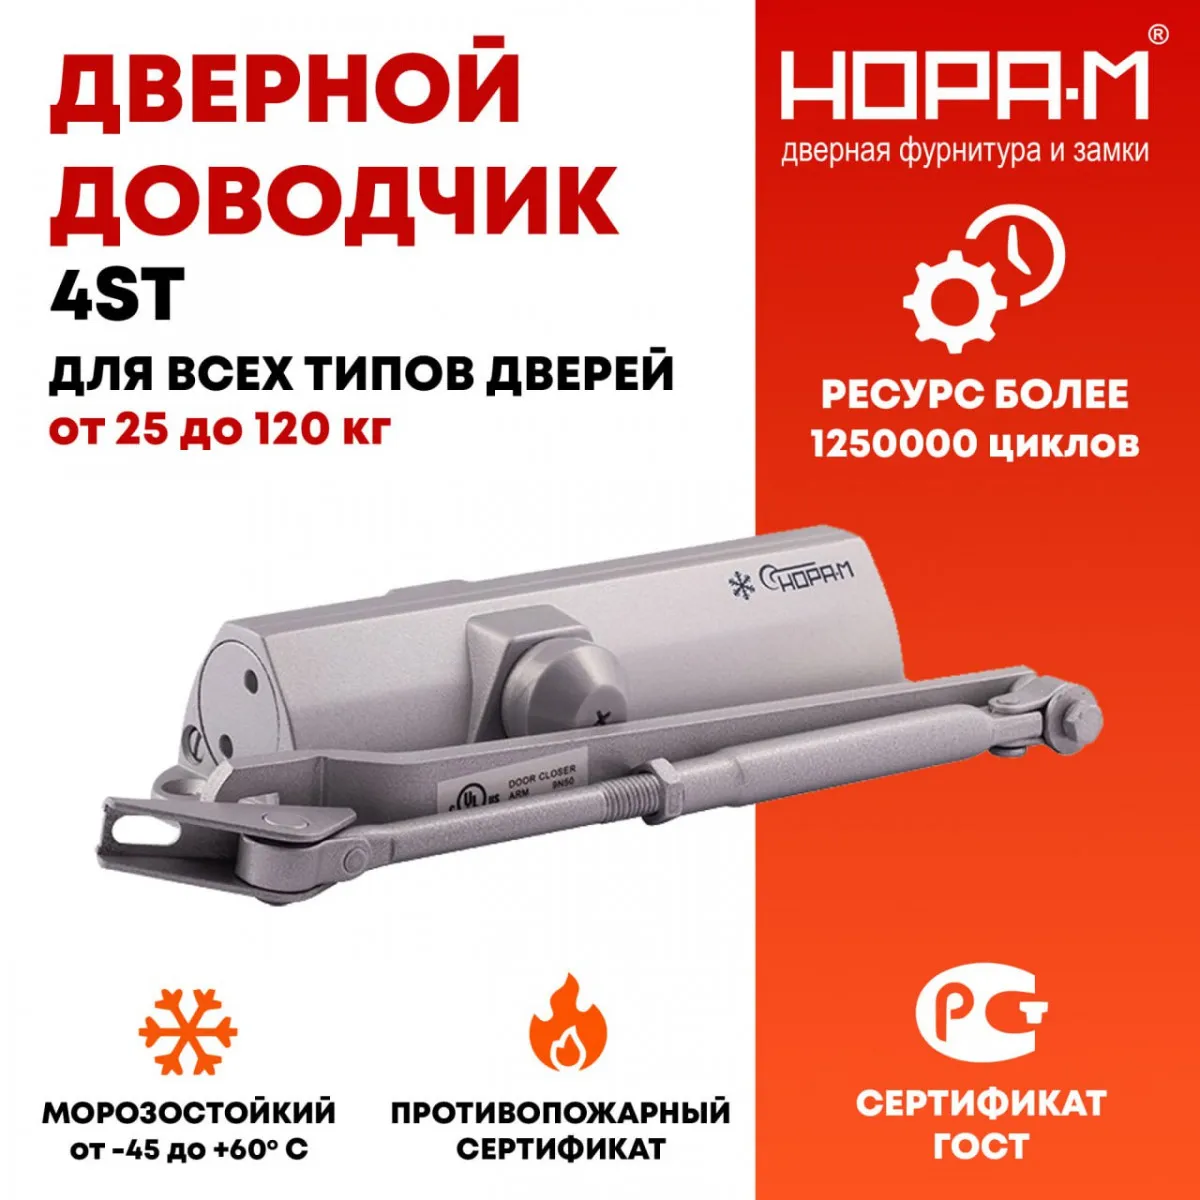 Rossiyaning NORA-M kompaniyasidan 25 dan 120 kg gacha bo'lgan 4ST eshikni yopishtiruvchi.#1